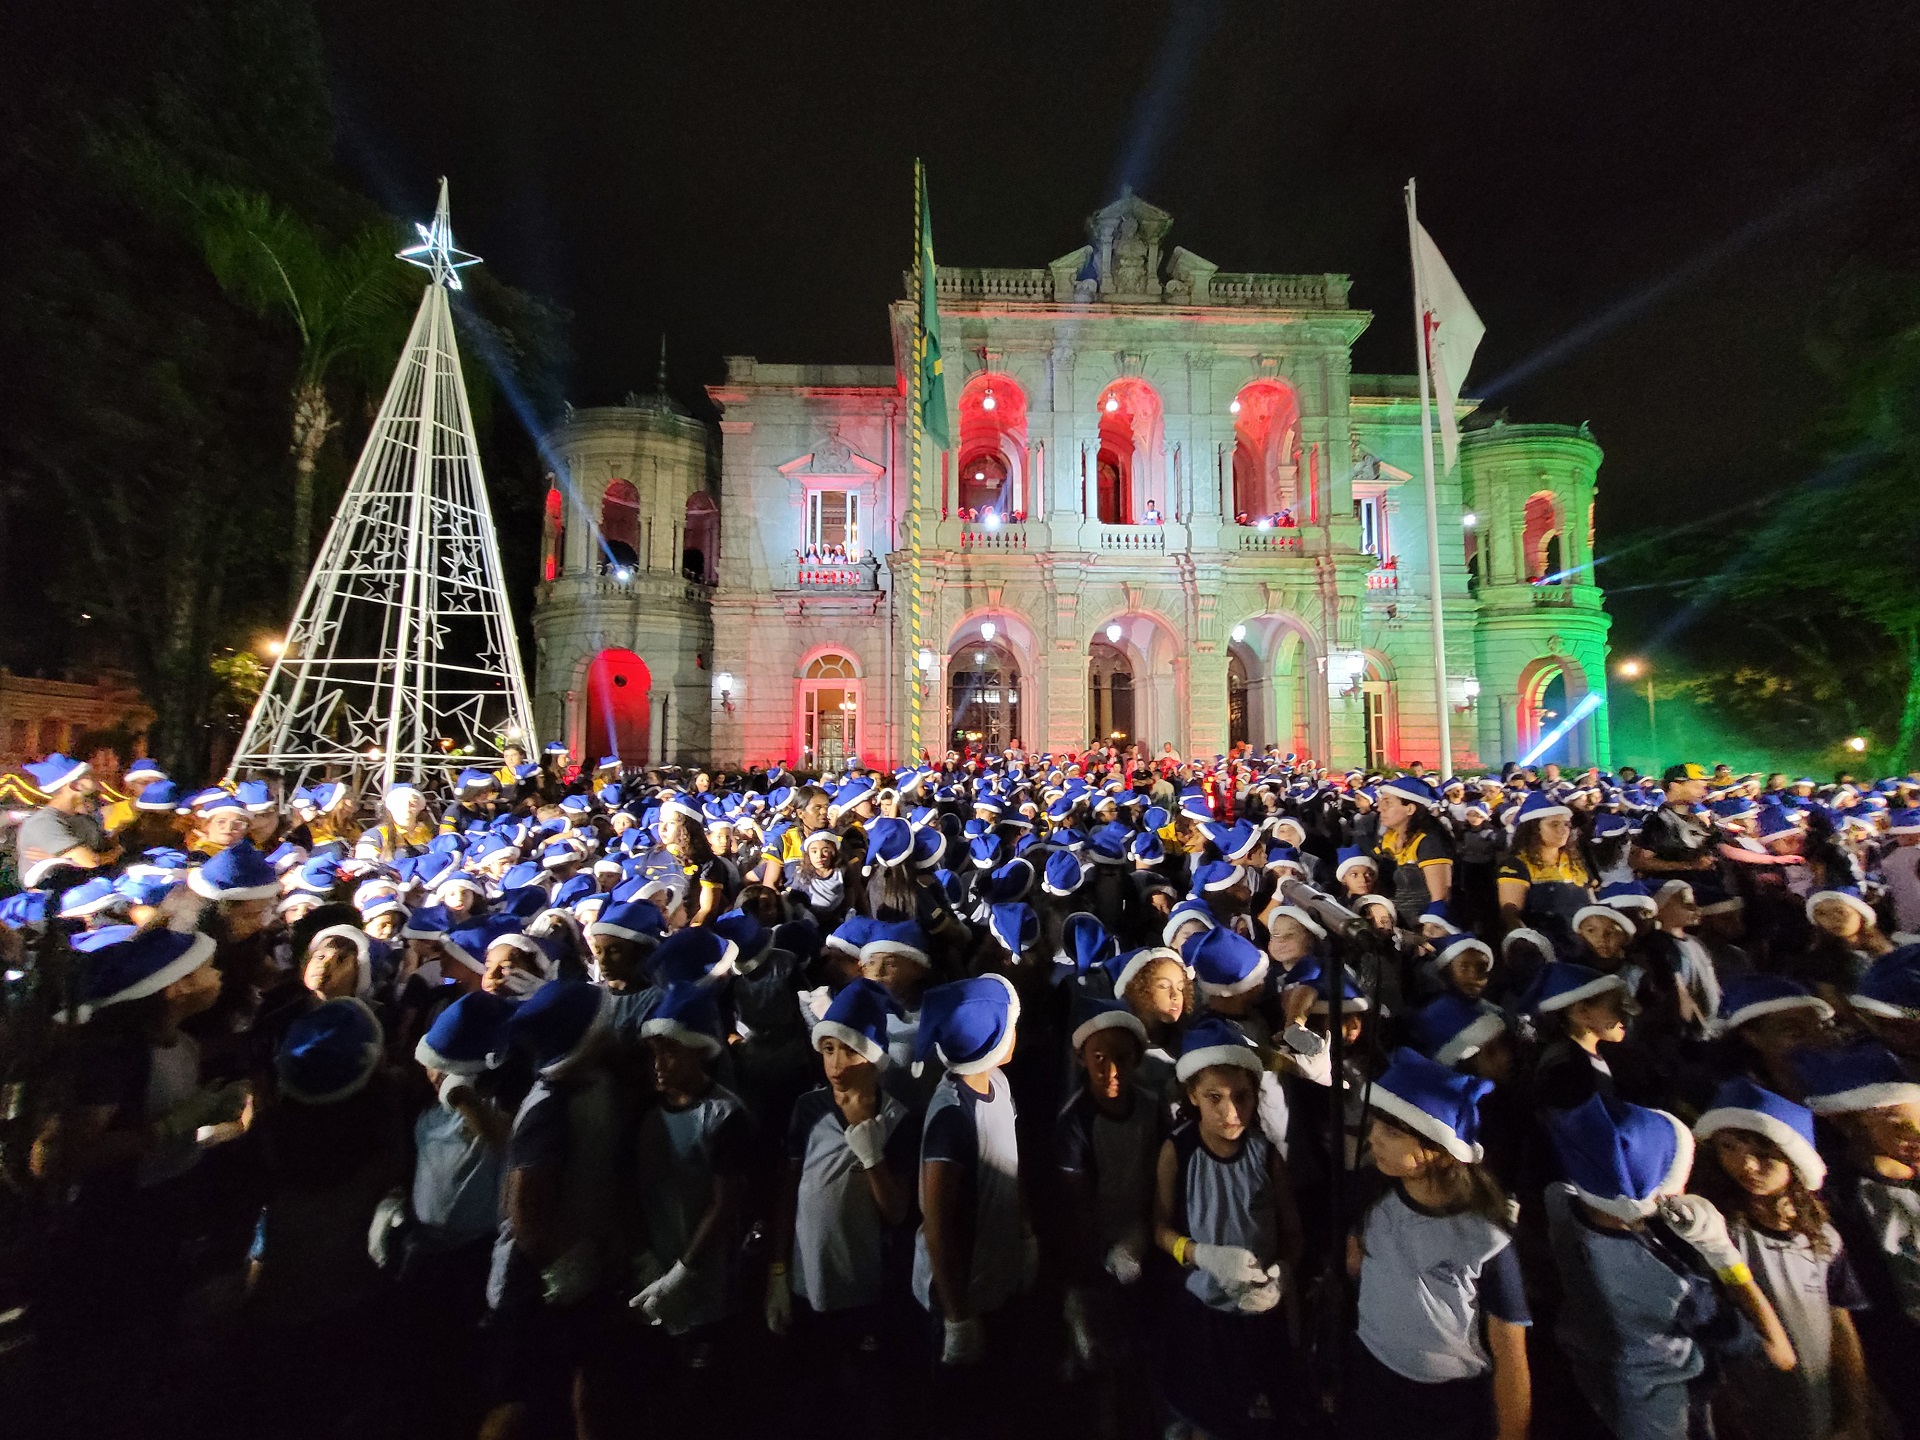 Waldyr Silva - Ano IX: Câmara Municipal inaugura iluminação de Natal deste  ano